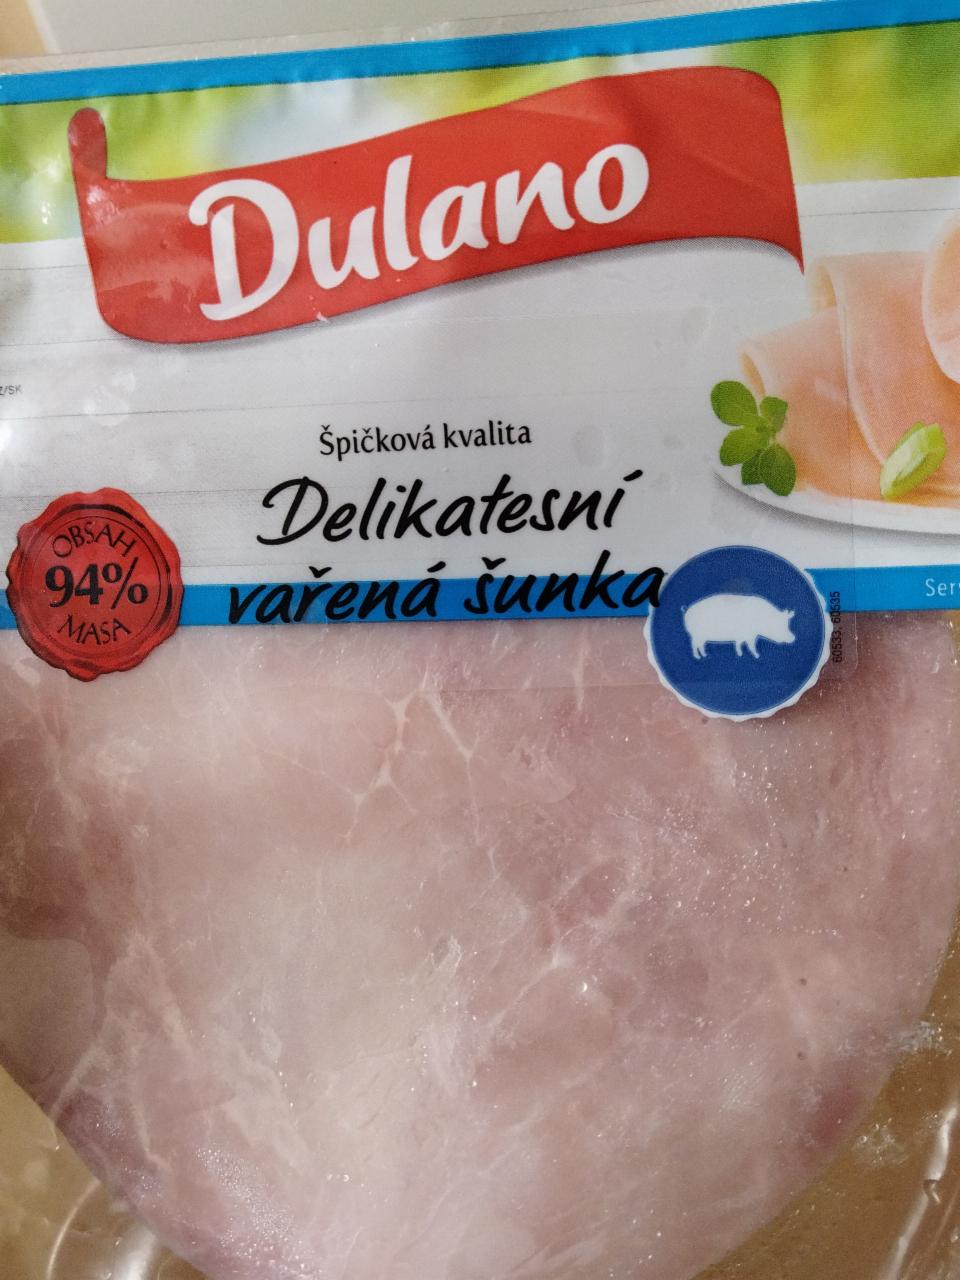 Fotografie - Delikatesní vařená šunka 94% masa Dulano